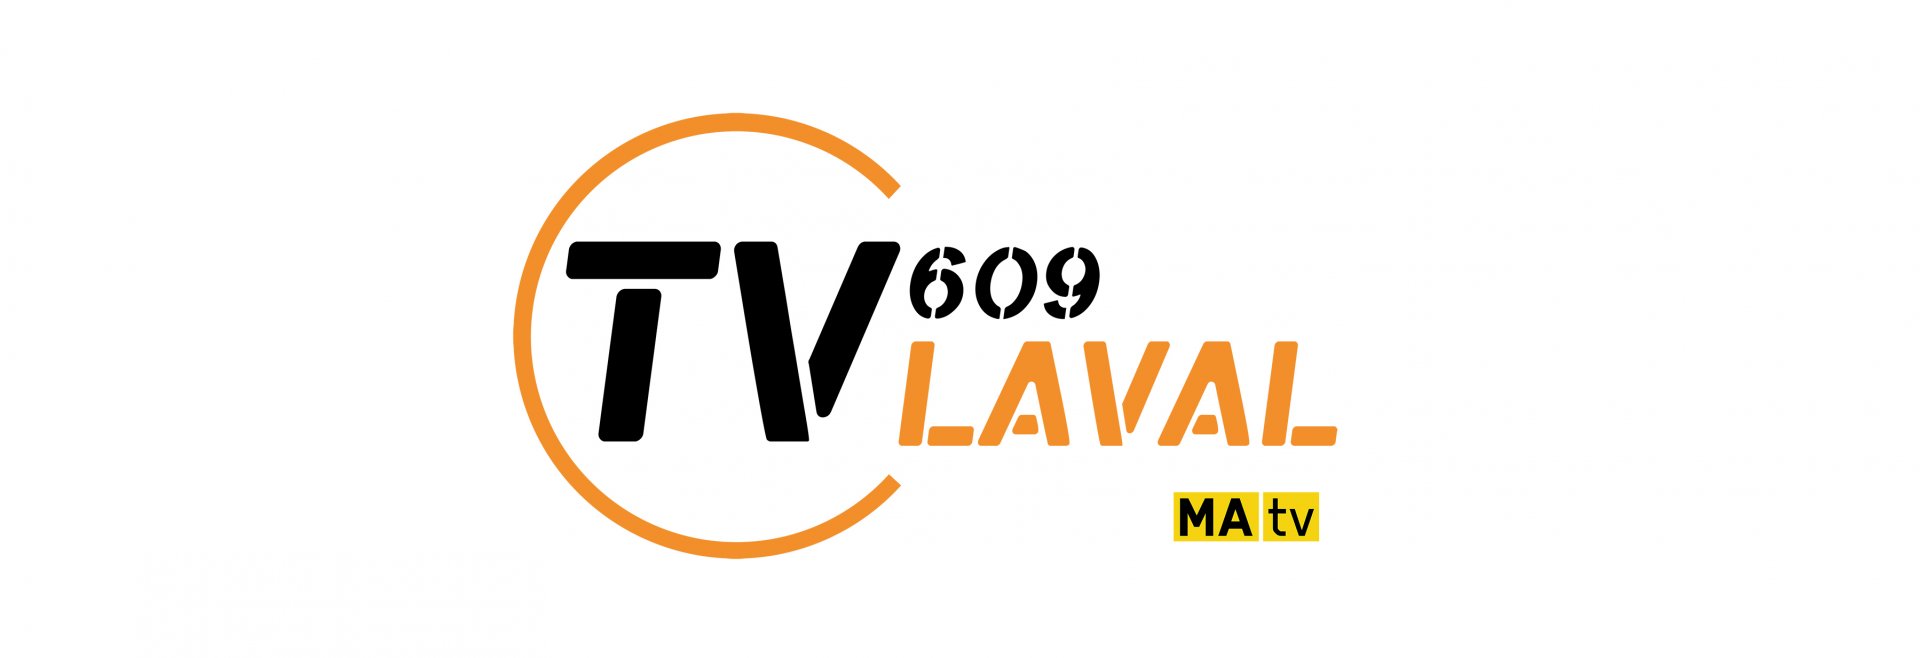 Opération Bonne Mine à TV Laval 609